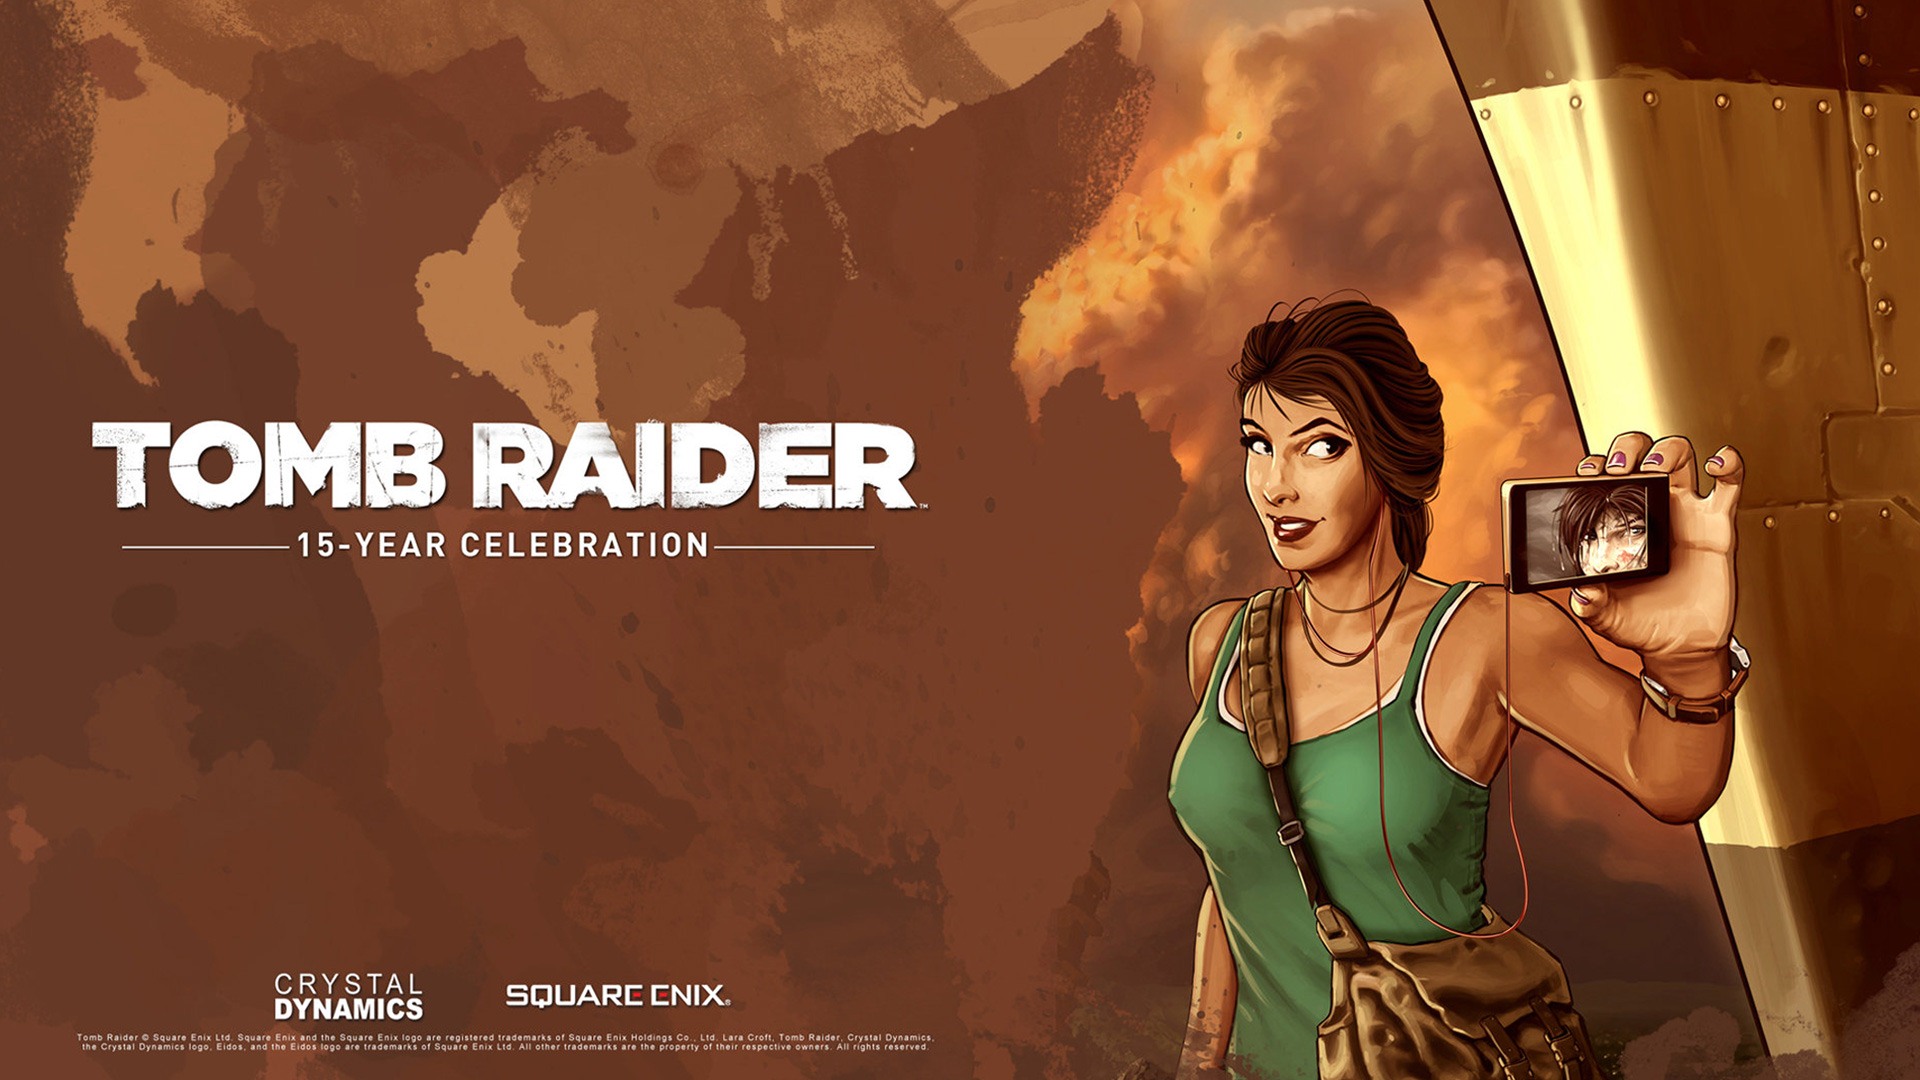 Tomb Raider 15-Year Celebration 古墓丽影15周年纪念版 高清壁纸15 - 1920x1080